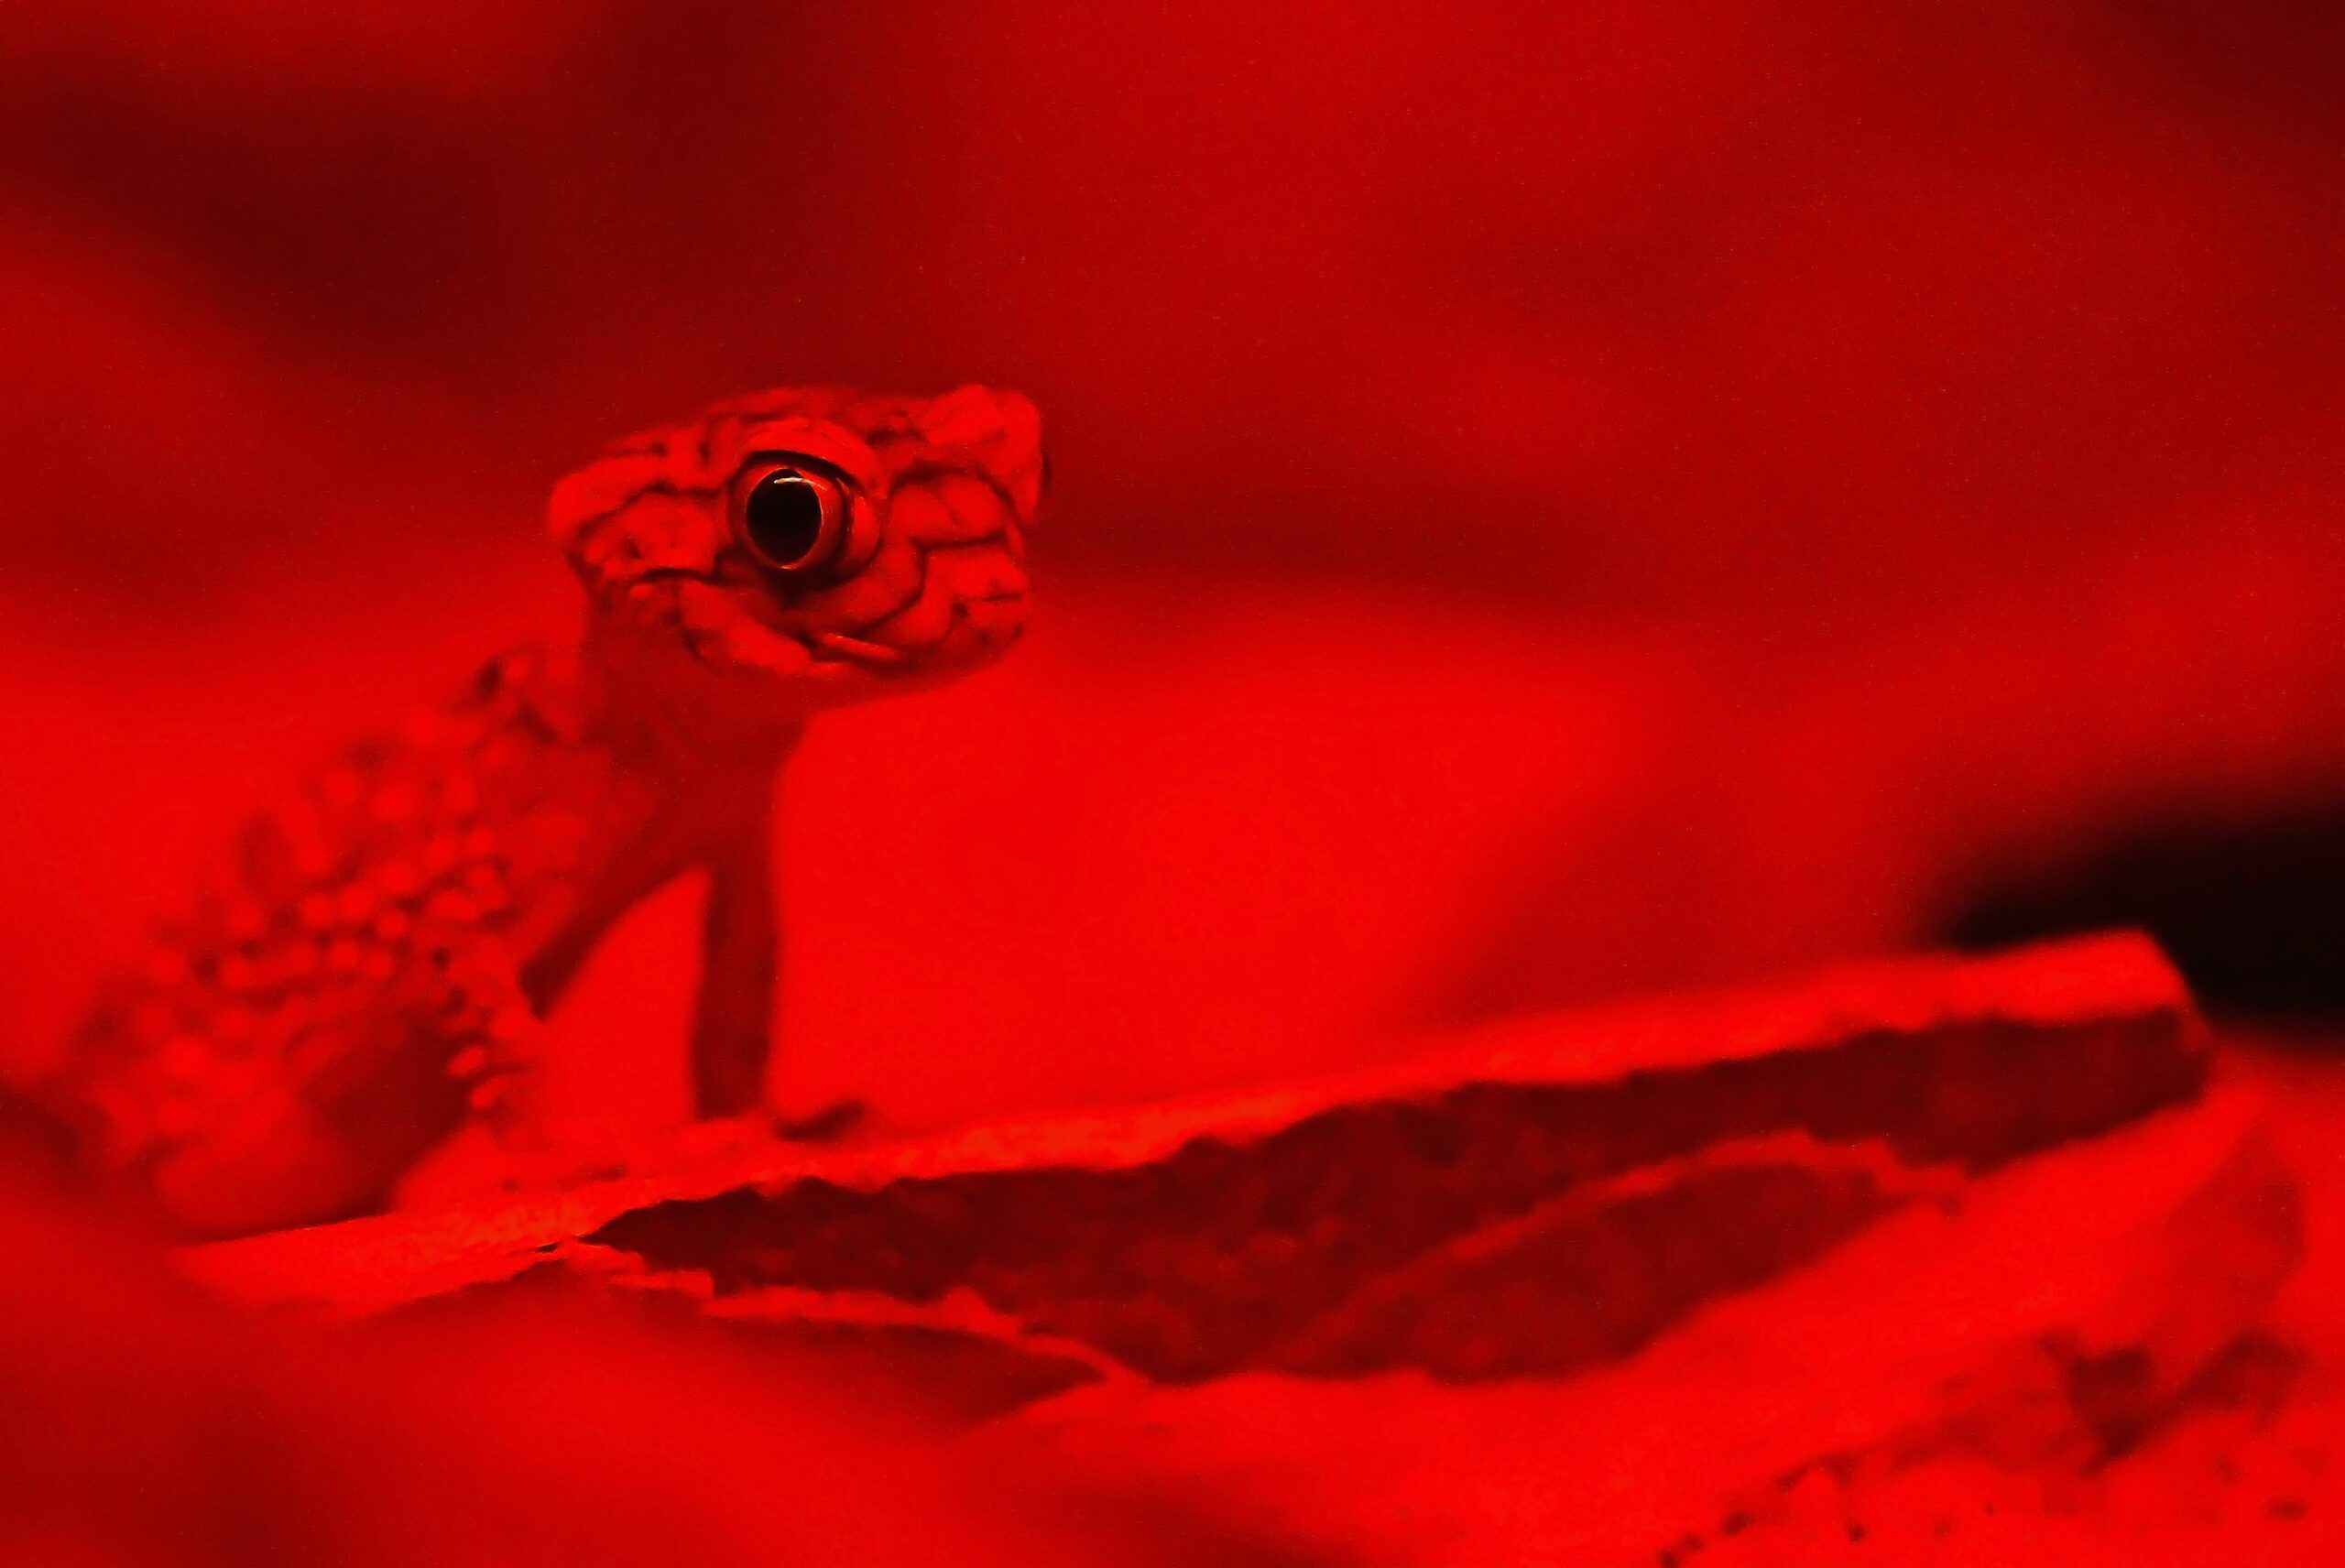 david-clode-Chameleon in Red Light-unsplash